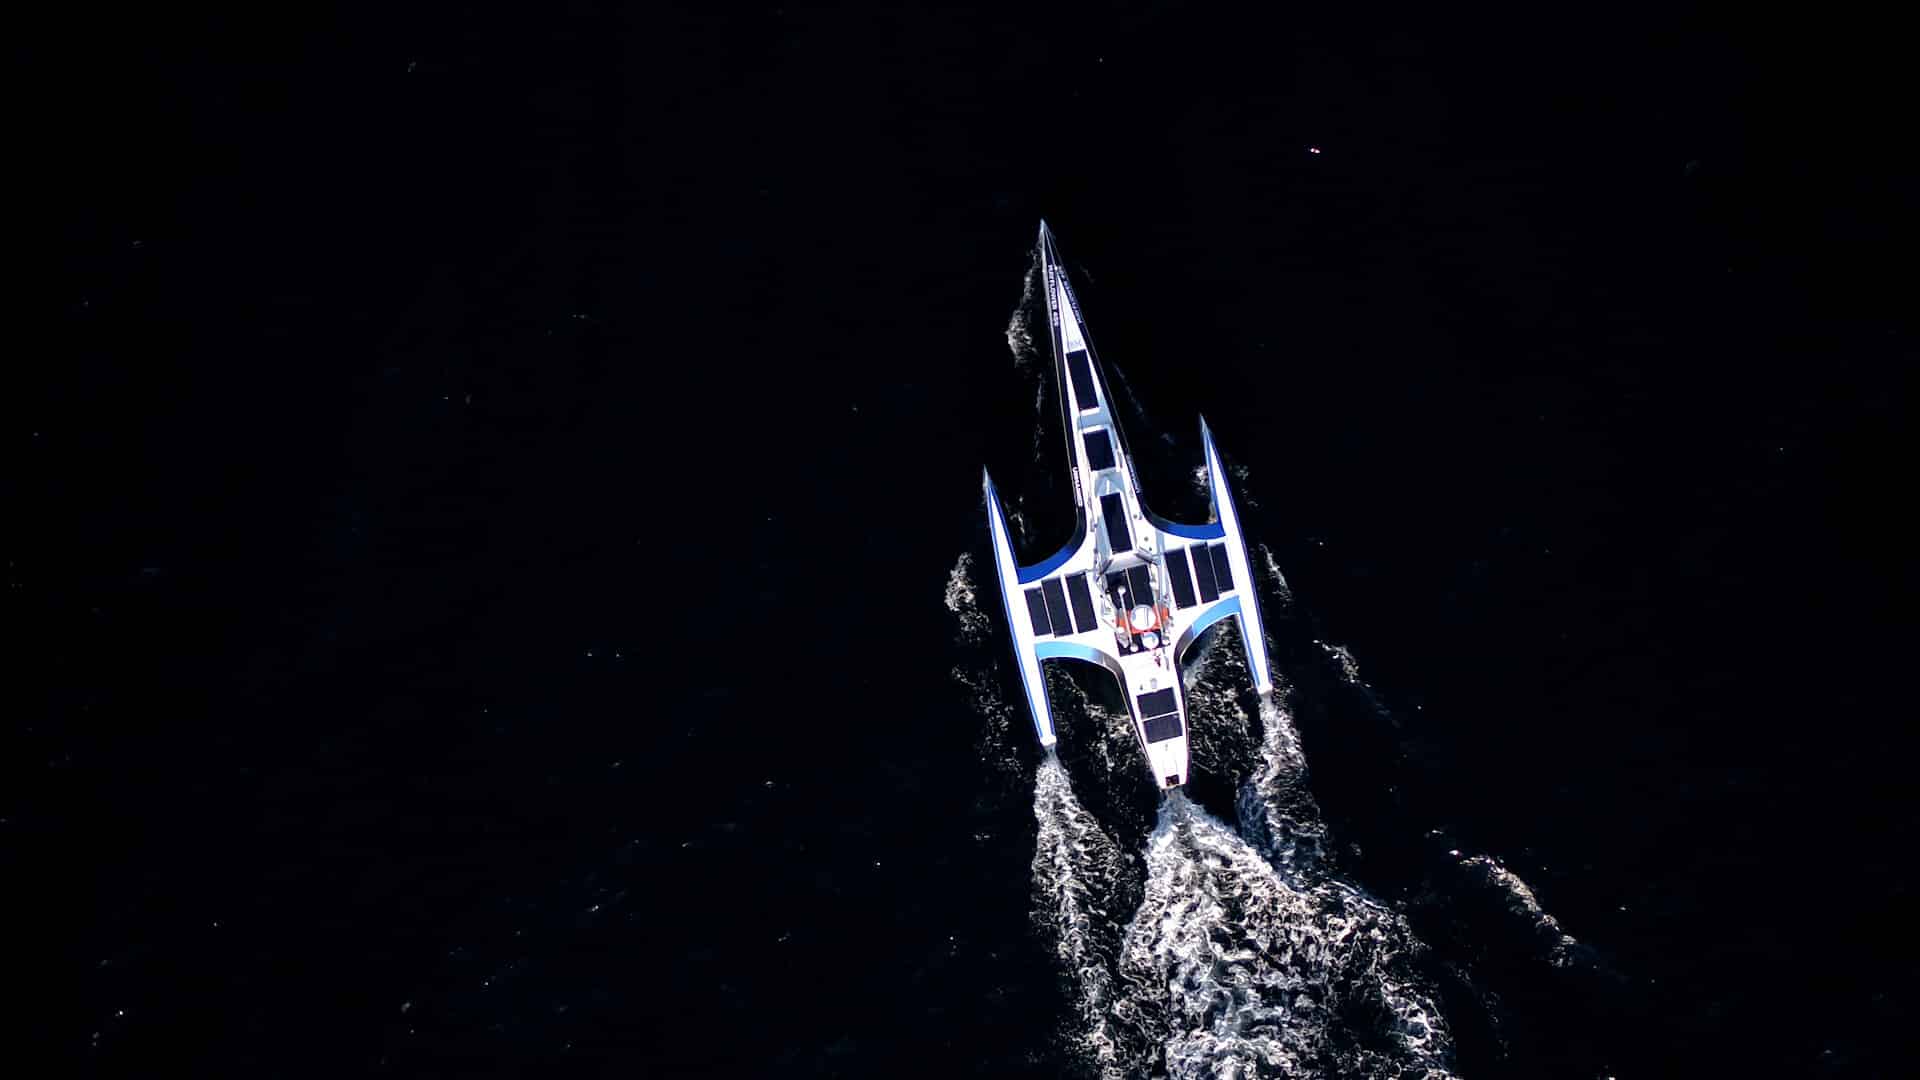 צילום רחפן של הספינה האוטונומית מייפלאואר עם יציאתה לאוקיאנוס האטלנטי בפלימות' בריטניה ב-15 ביוני 2021. צילום יחצ IBM